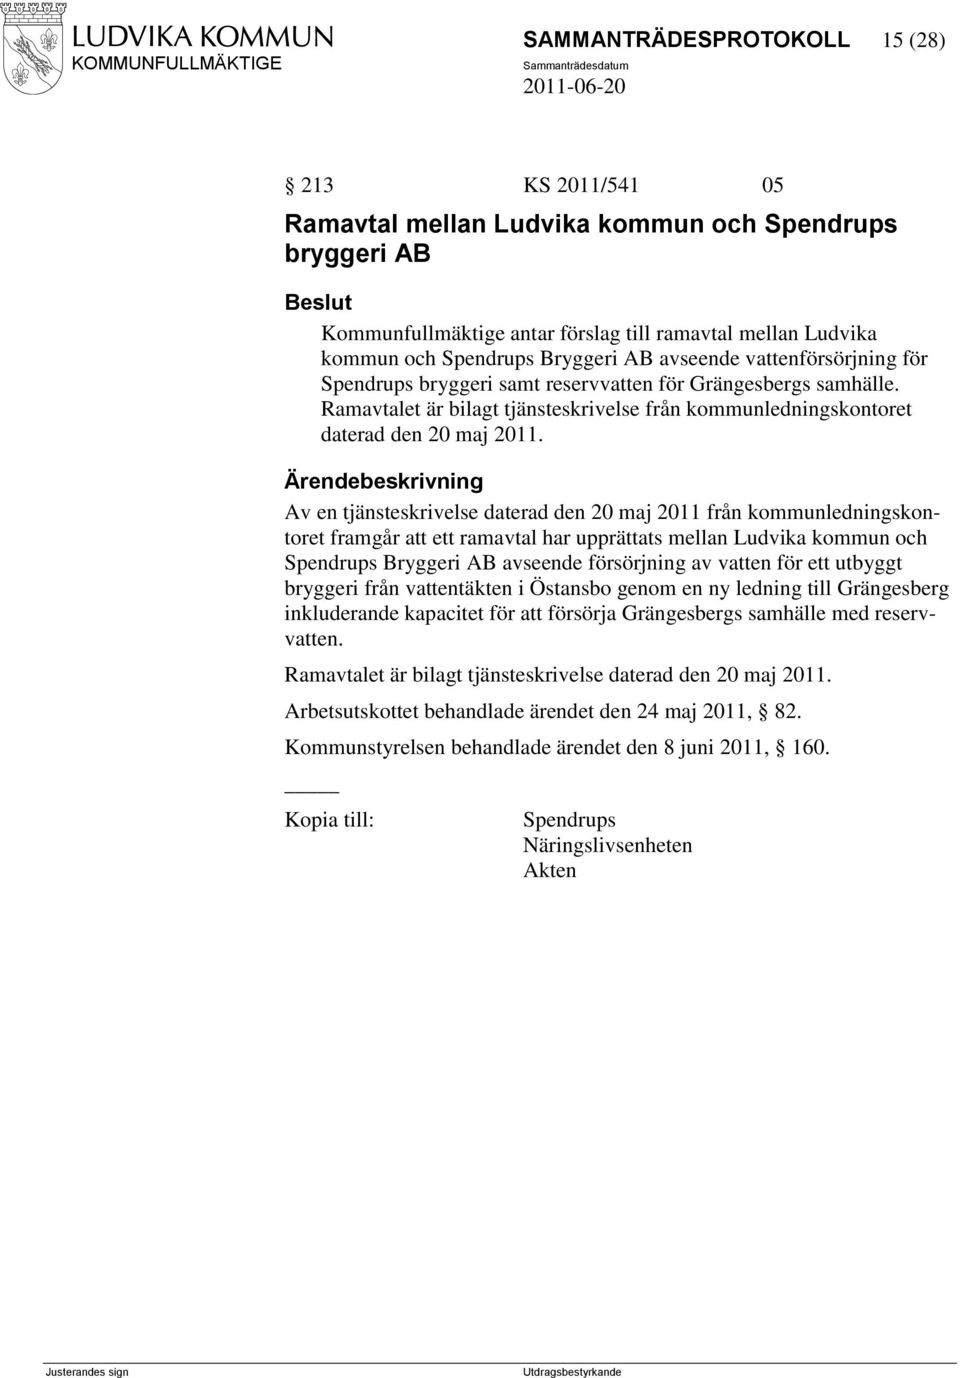 Av en tjänsteskrivelse daterad den 20 maj 2011 från kommunledningskontoret framgår att ett ramavtal har upprättats mellan Ludvika kommun och Spendrups Bryggeri AB avseende försörjning av vatten för